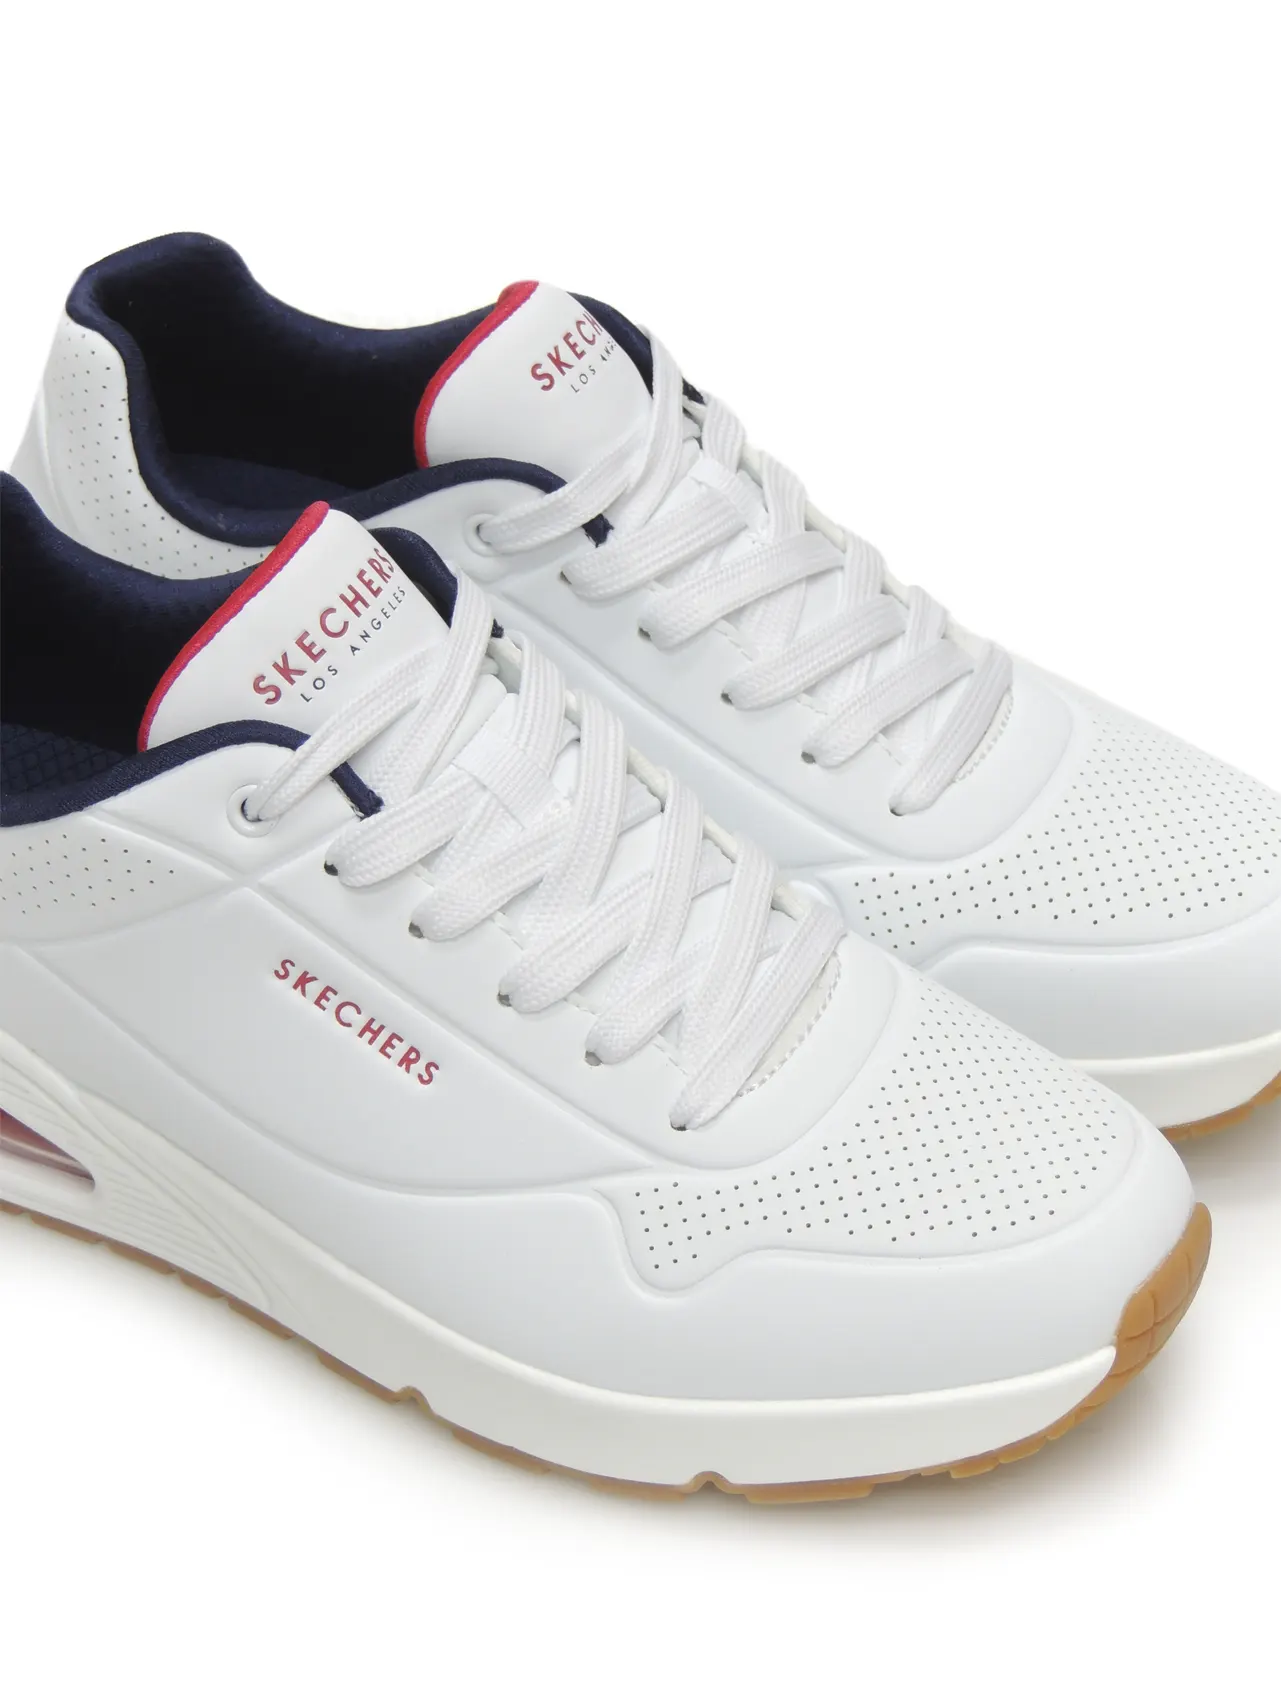 sneakers--skechers-52458-polipiel-blanco